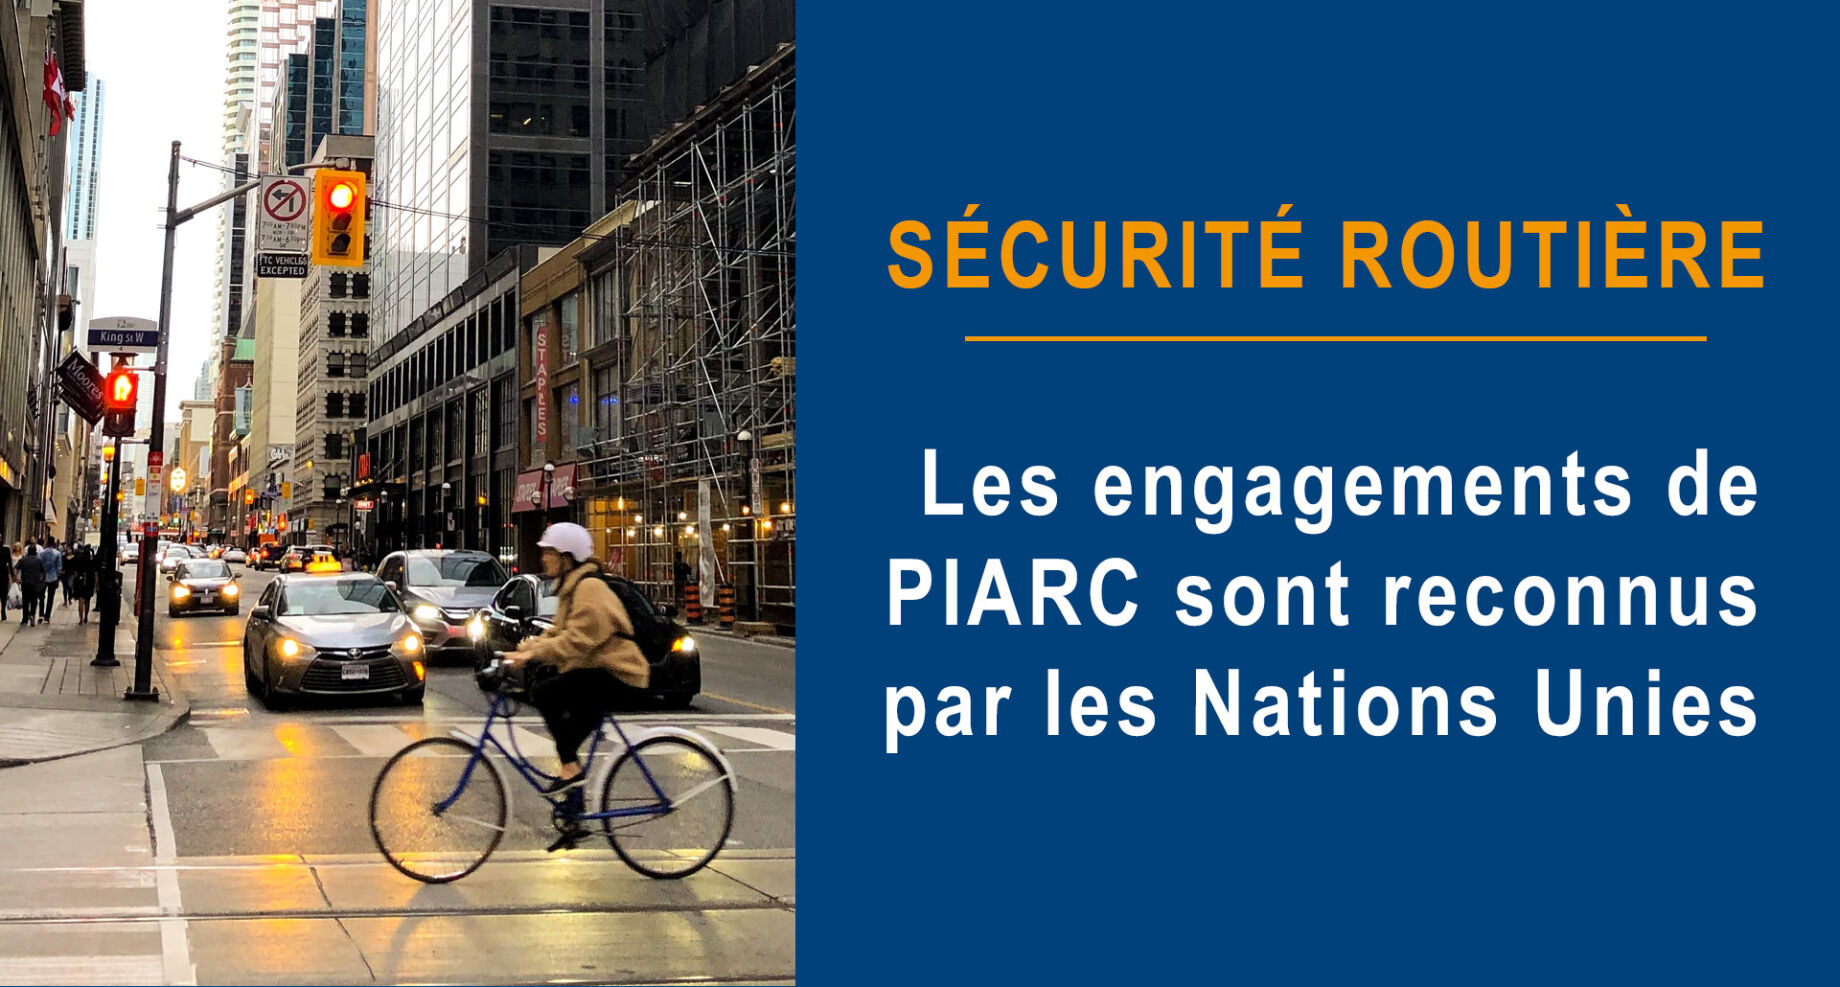 Sécurité routière - Les engagements de PIARC sont reconnus par les Nations unies